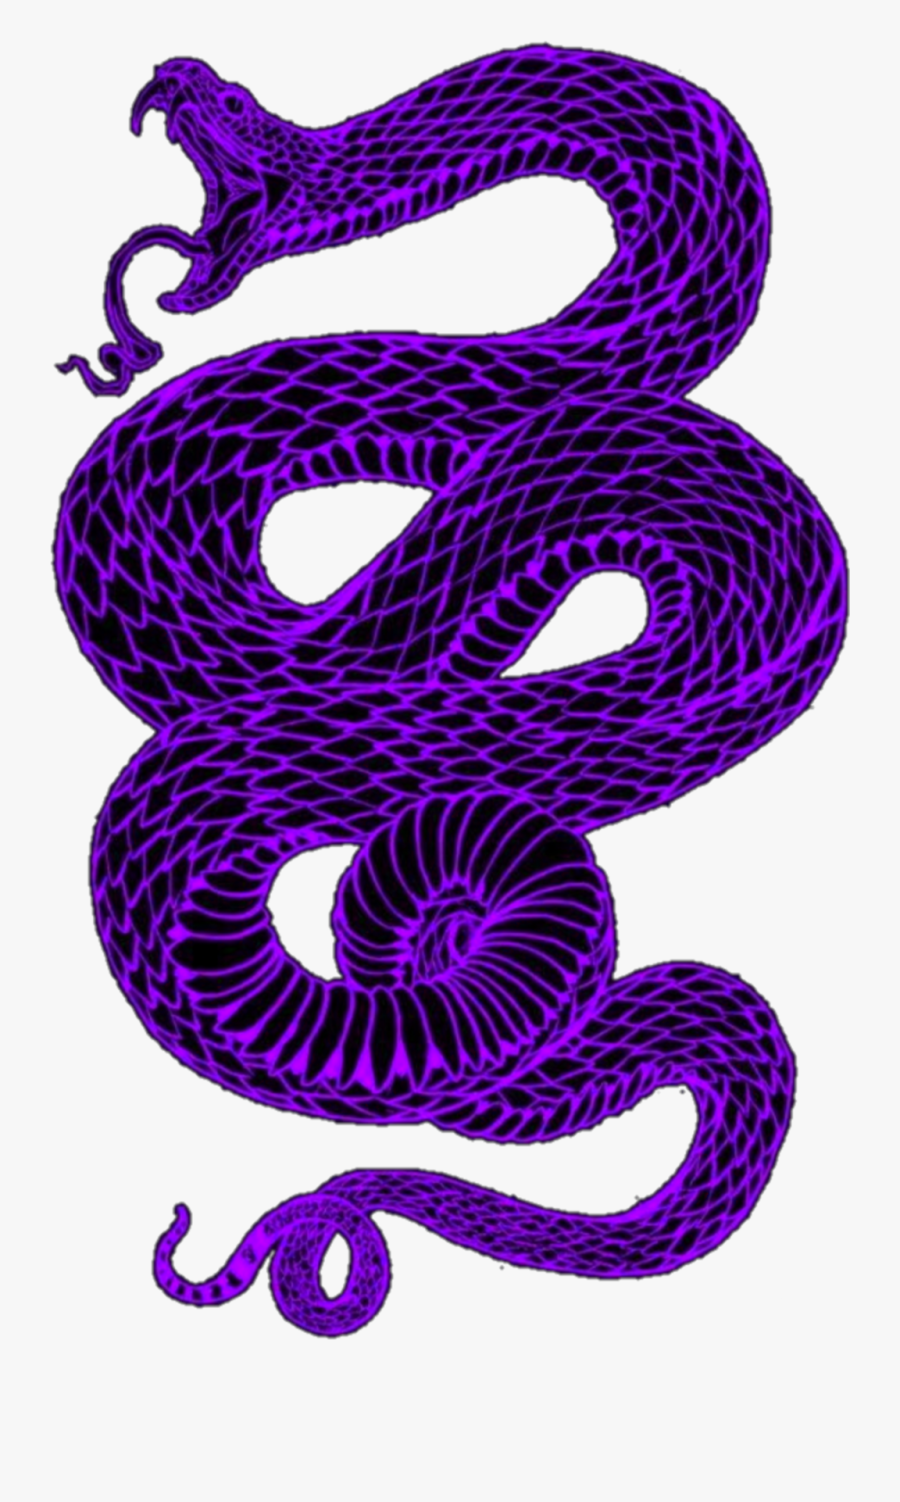 #purple #snake #aesthetic #dark #goth #eboy #egirl - Snake Wallpaper Aesthetic, Transparent Clipart